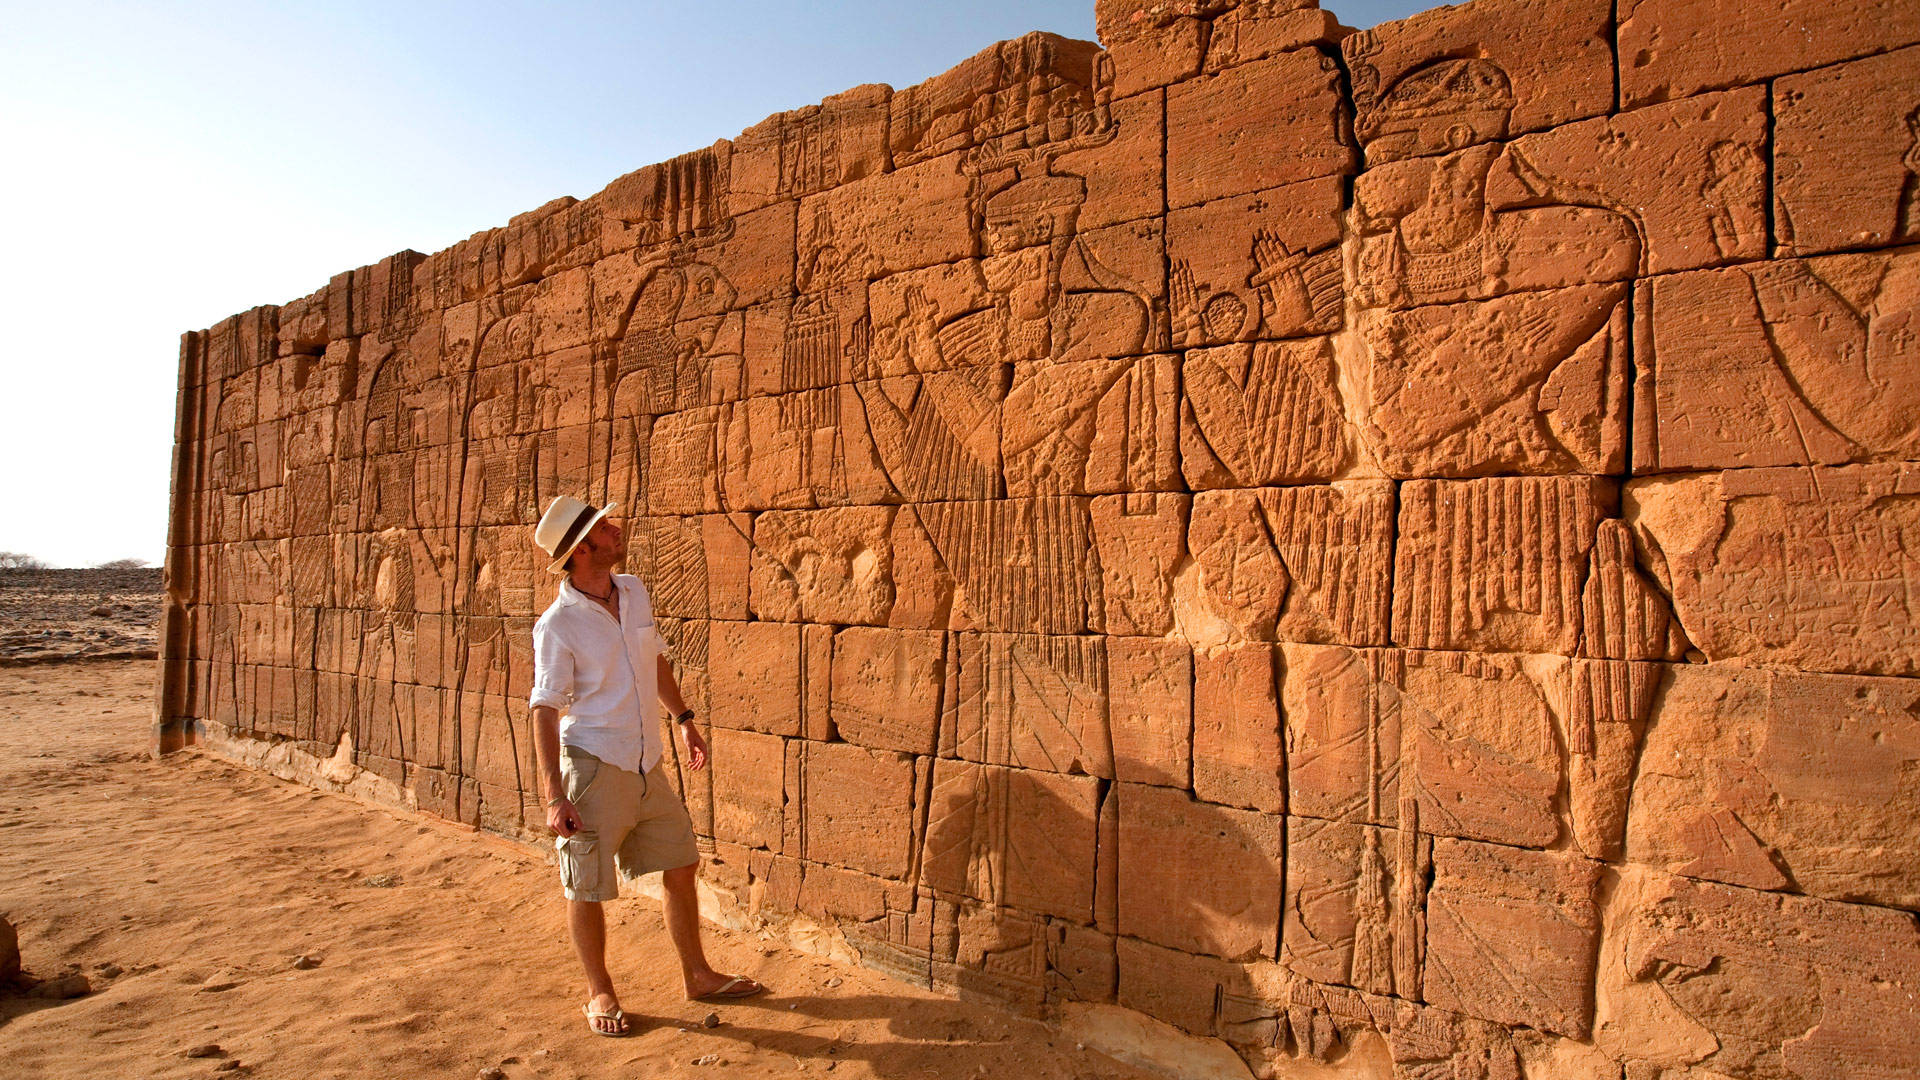 Turist på pyramid af Sudan skyggefuld du kunne træde ind Wallpaper